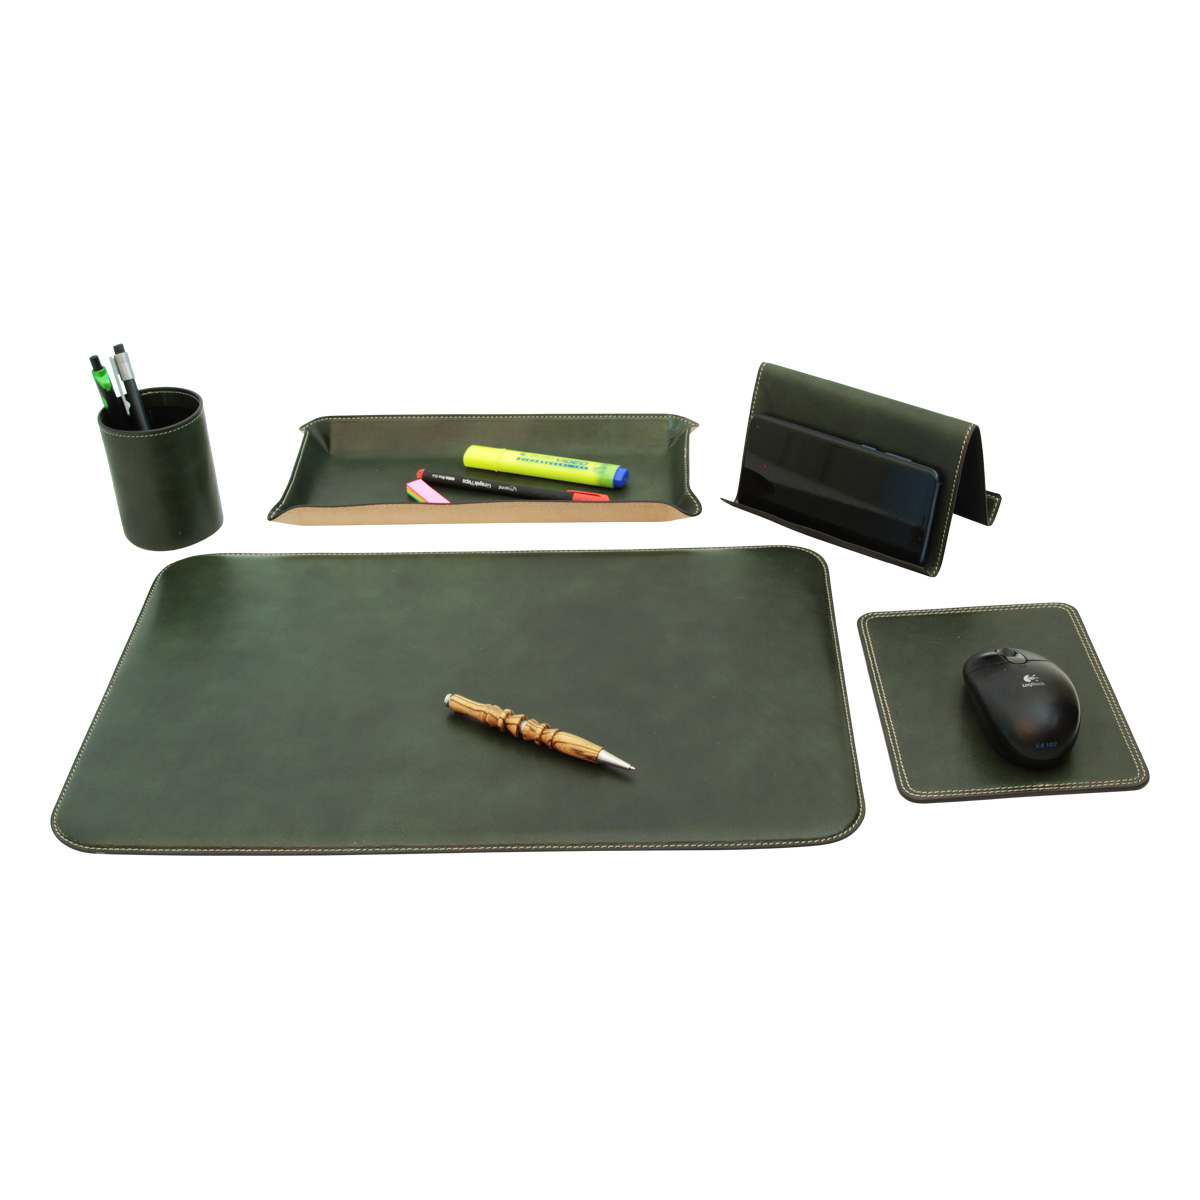 Leather desk kit - 5 pcs   green | 769089VE | EURO | Old Angler Firenze